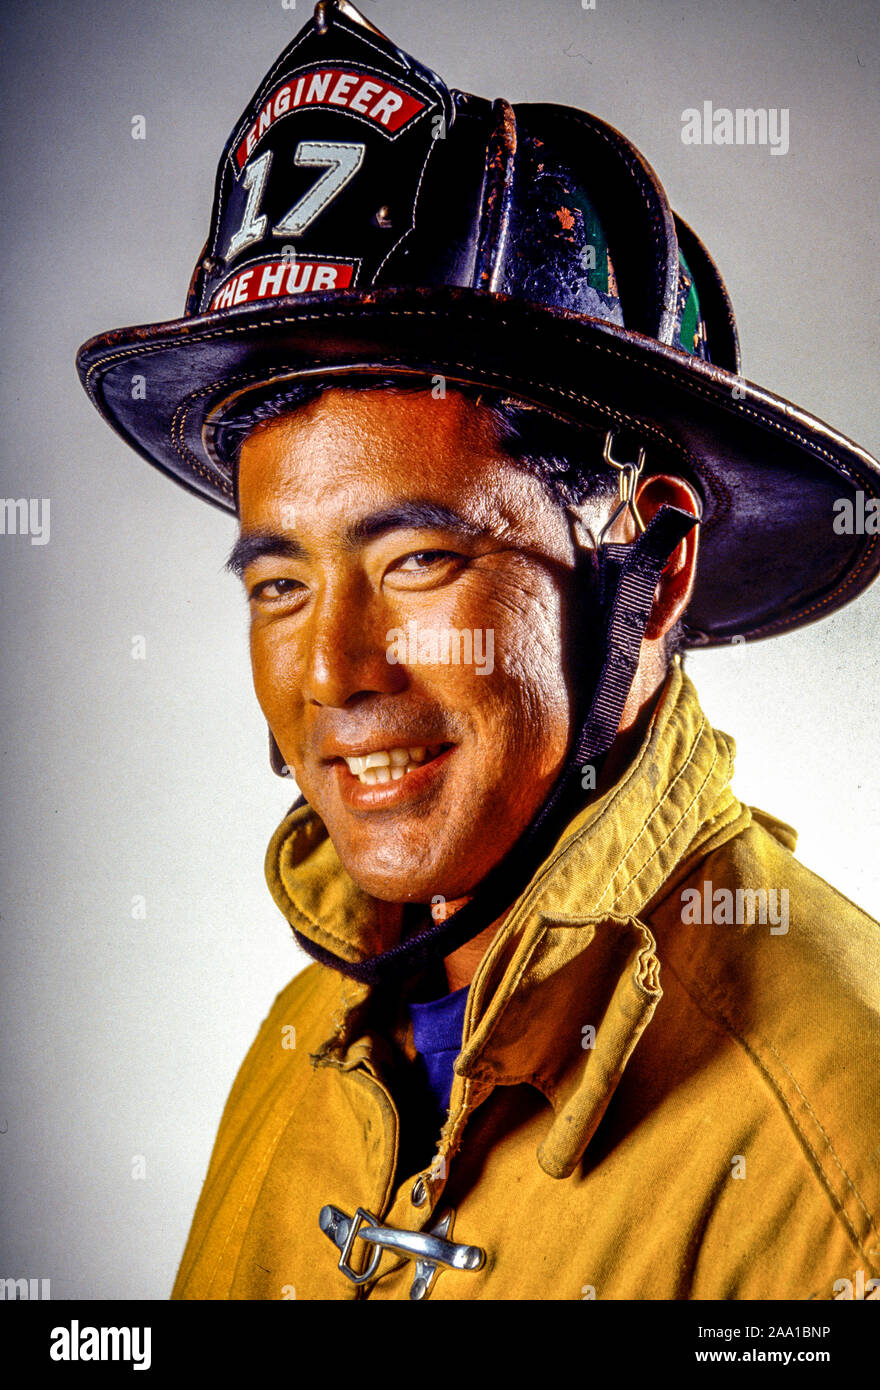 Un pompier américain à San Diego, CA, pose de porter son casque et  vêtements de sécurité. L'insigne sur son casque indique qu'il s'agit d'un  conducteur d'un camion à incendie Photo Stock -